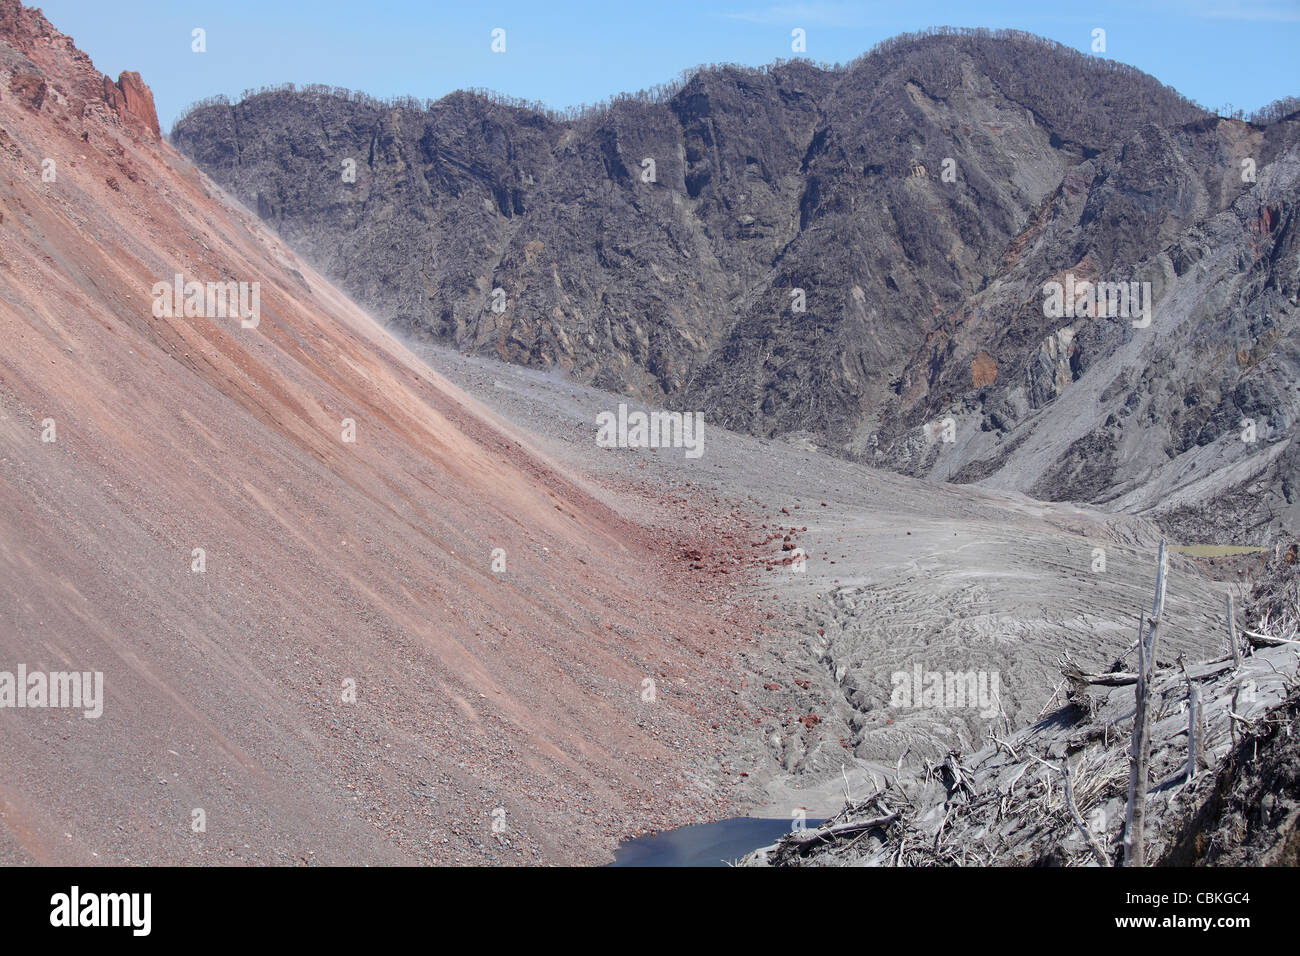 6. Dezember 2009 - Lava-Dome steigt vom Boden der Krater des Vulkans Chaiten, Chile. Stockfoto